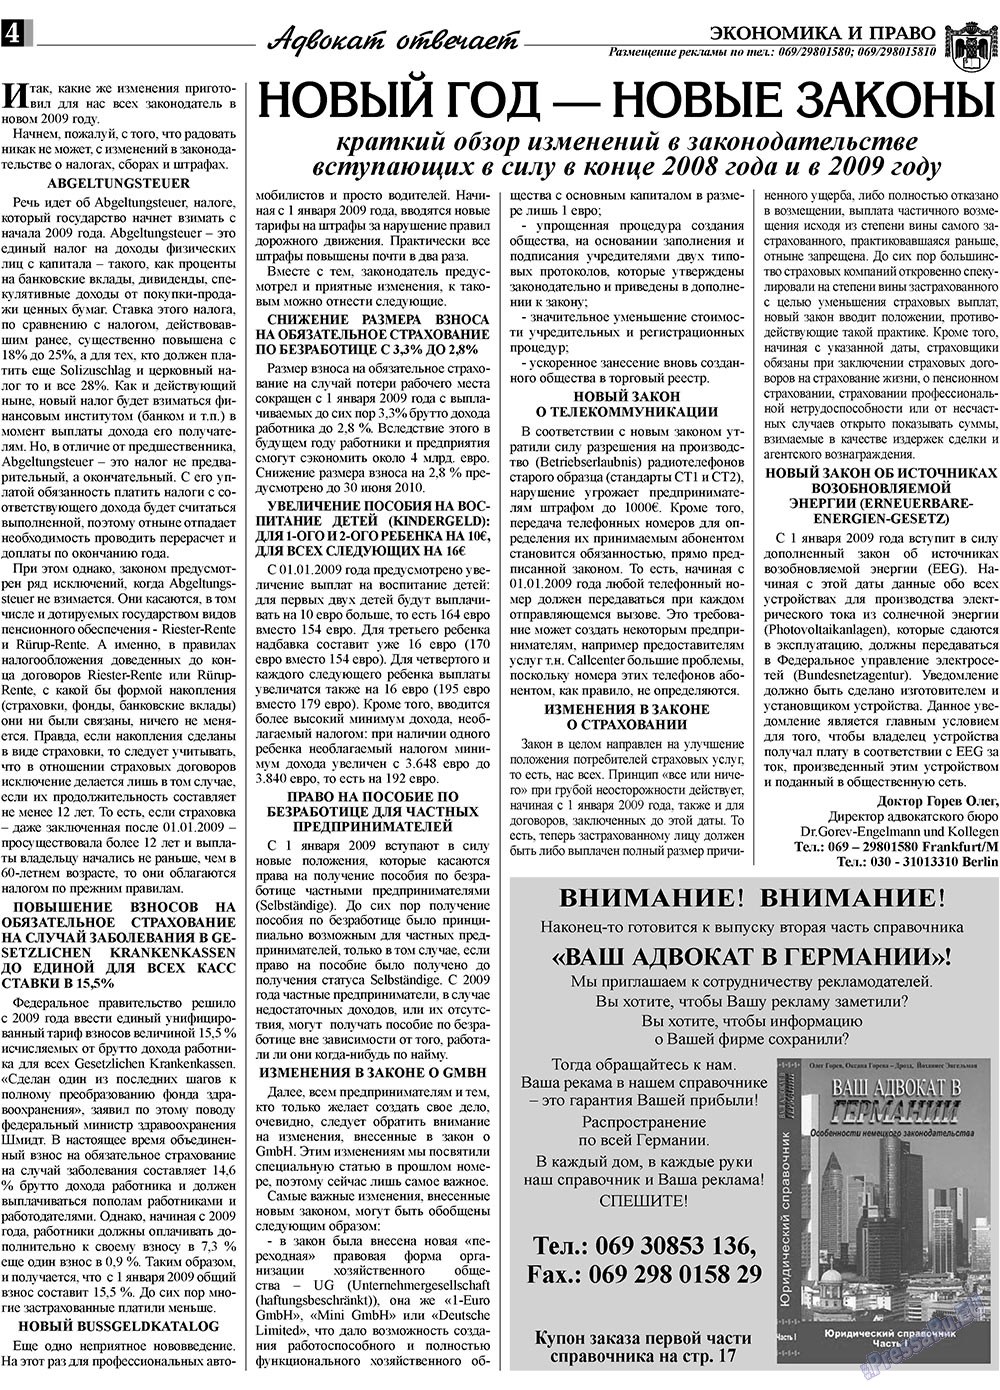 Экономика и право, газета. 2009 №1 стр.4